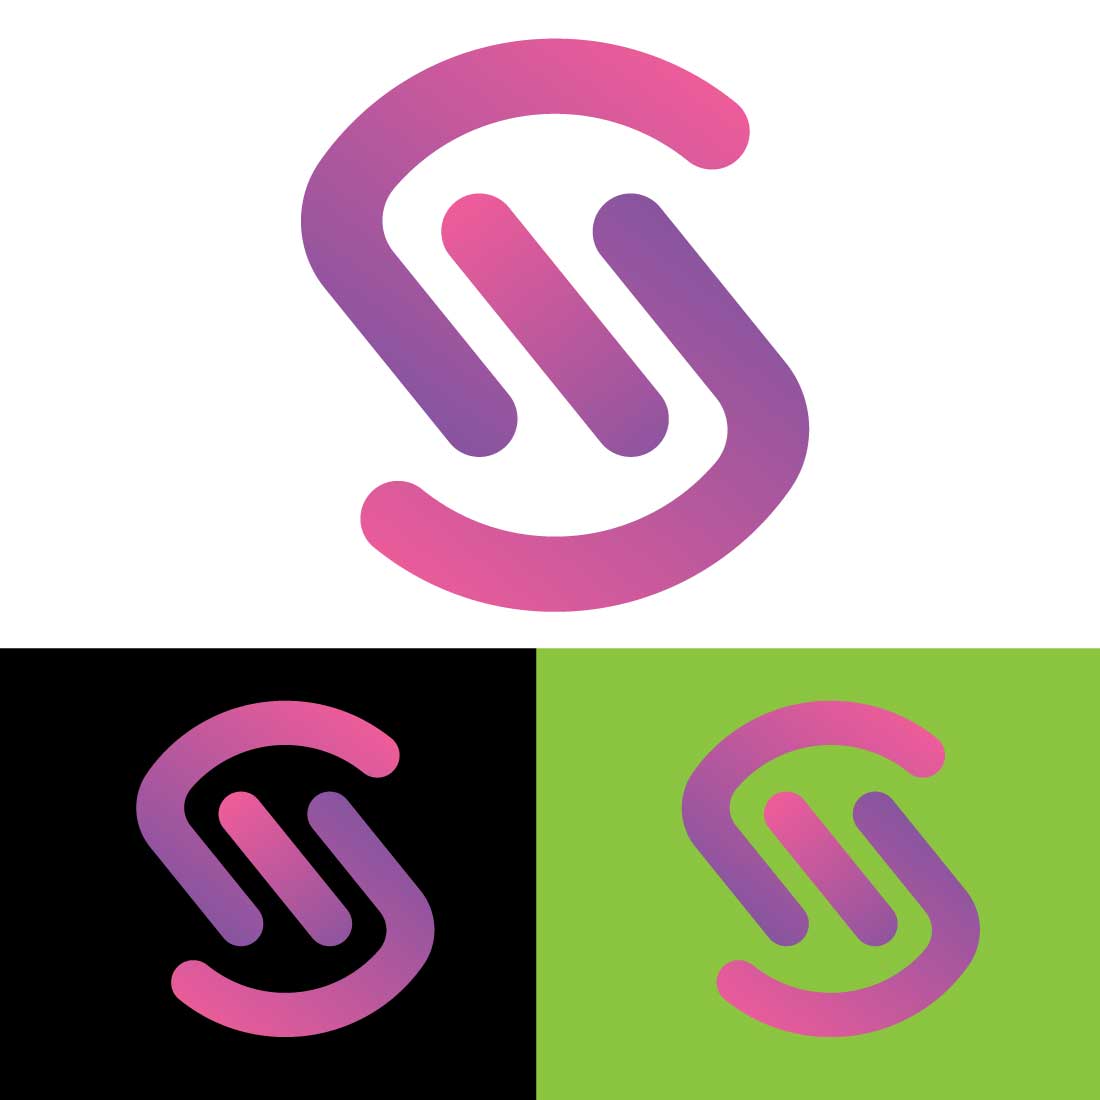 S logo design SVG/EPS/PNG cover image.